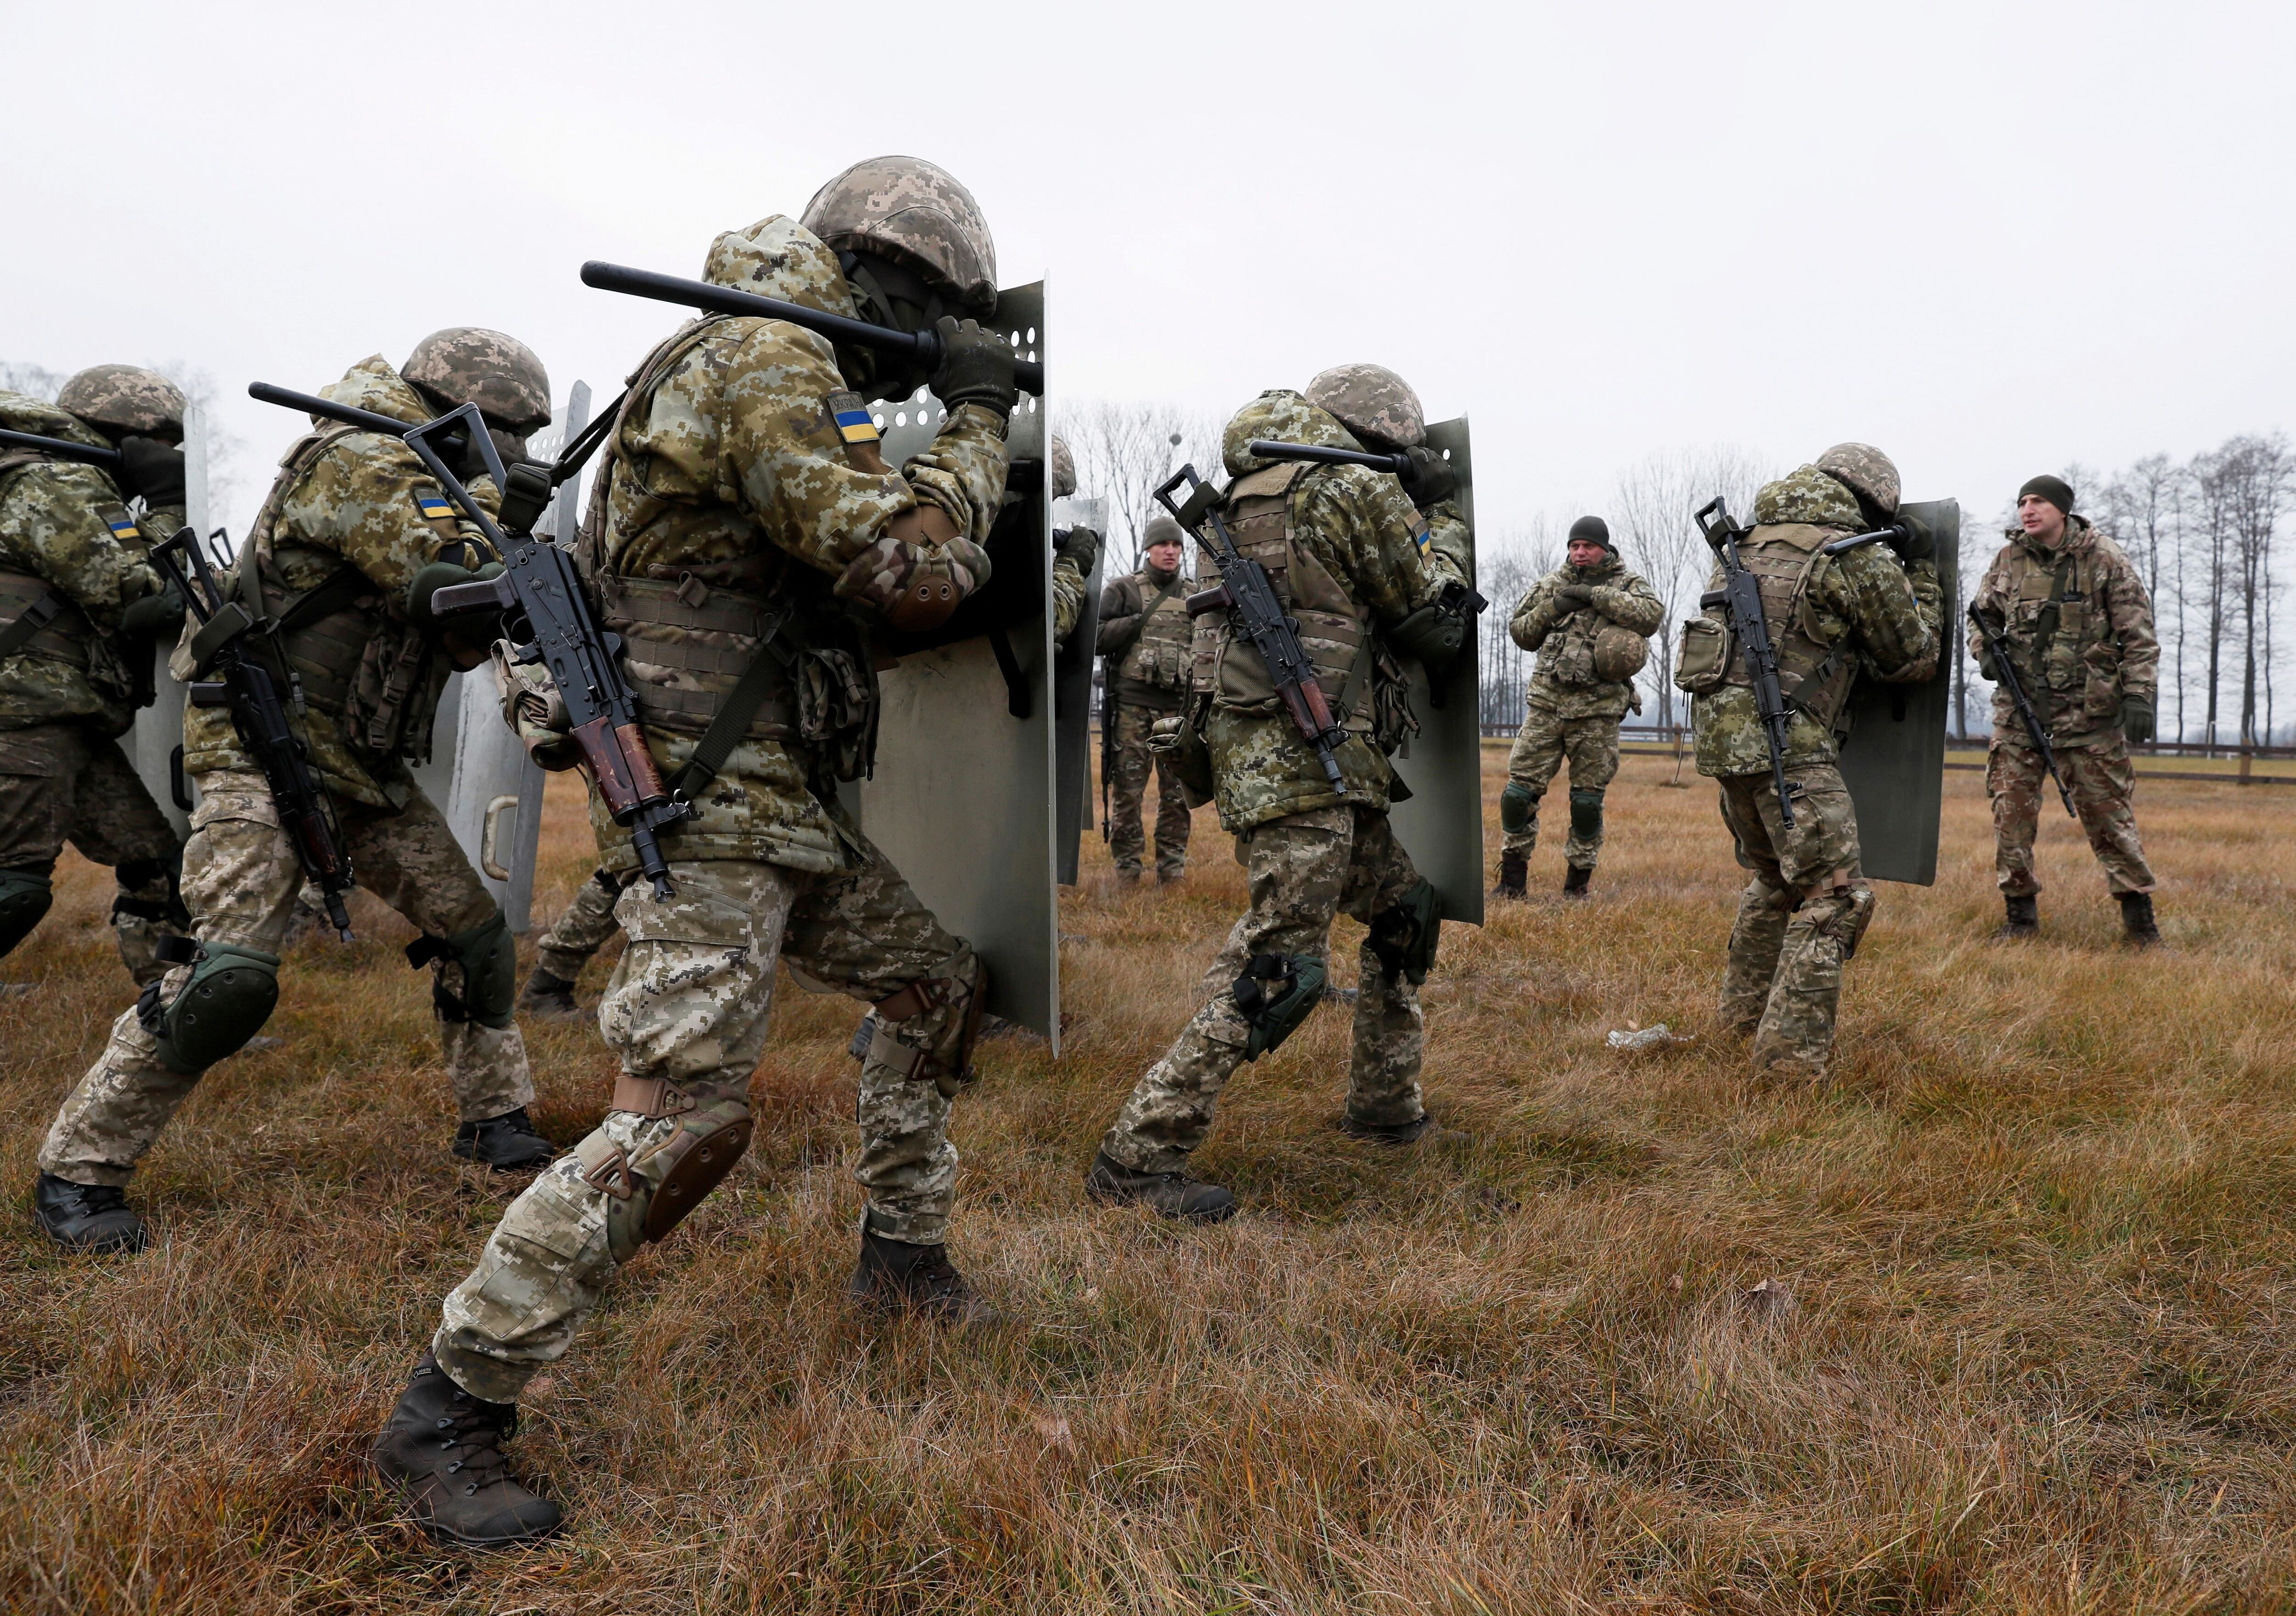 Miembros del Servicio Estatal de Guardia de Fronteras de Ucrania asisten a una sesión de entrenamiento cerca de la frontera con Bielorrusia y Polonia en la región de Volyn, Ucrania, el 16 de noviembre de 2021.  REUTERS/Gleb Garanich